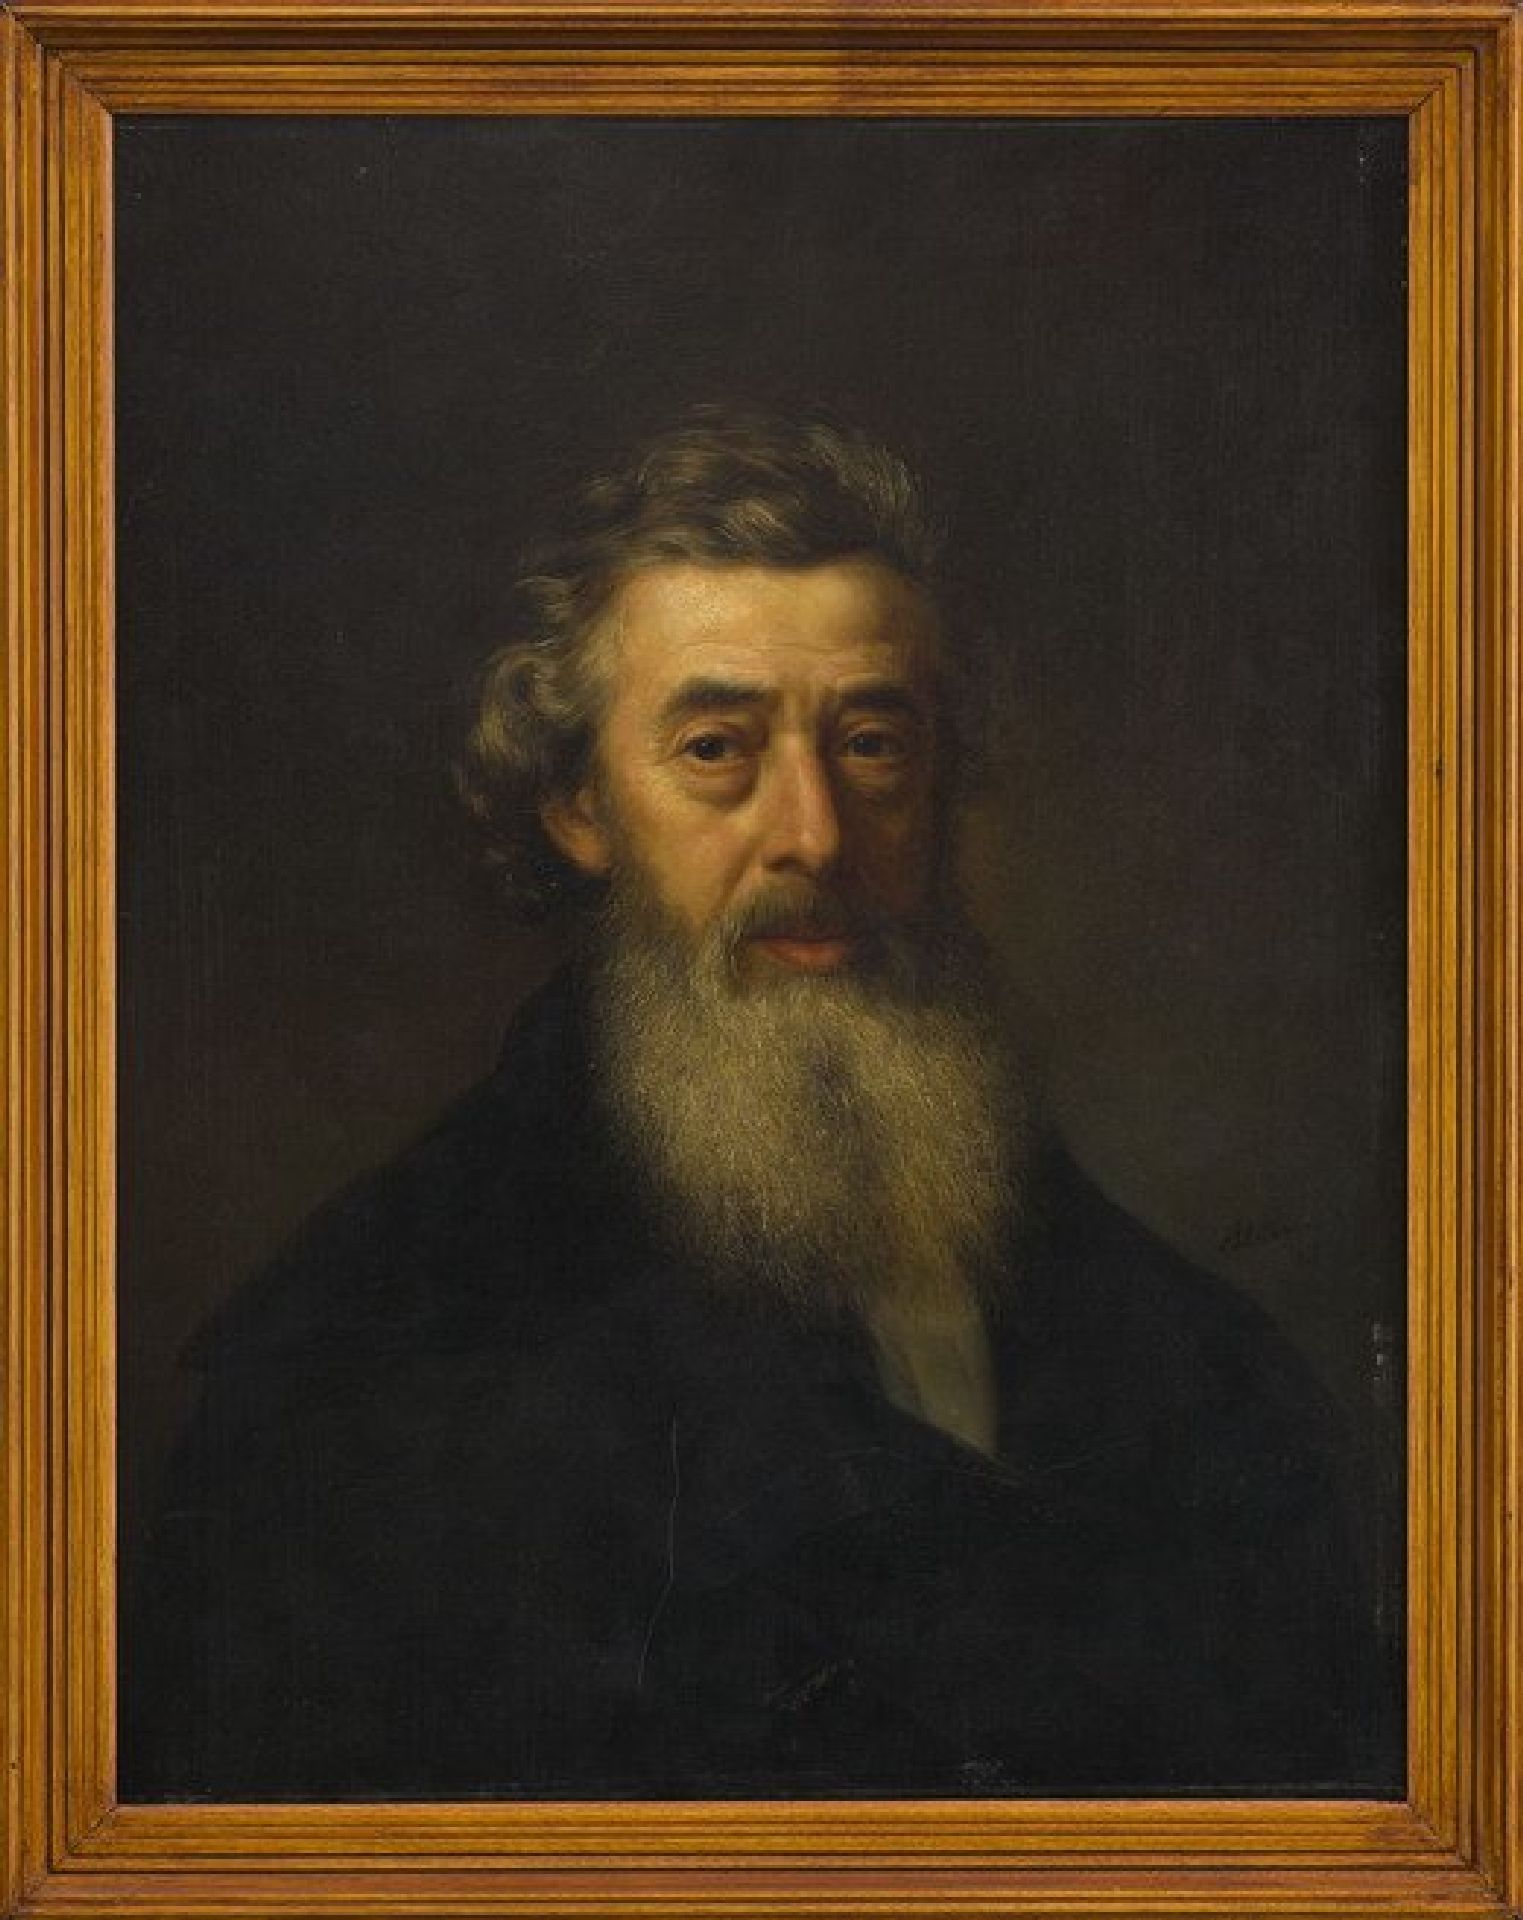 Portret van kunstenaar, kunstschilder, aquarellist en tekenaar 'Jacobus' Theodorus Abels